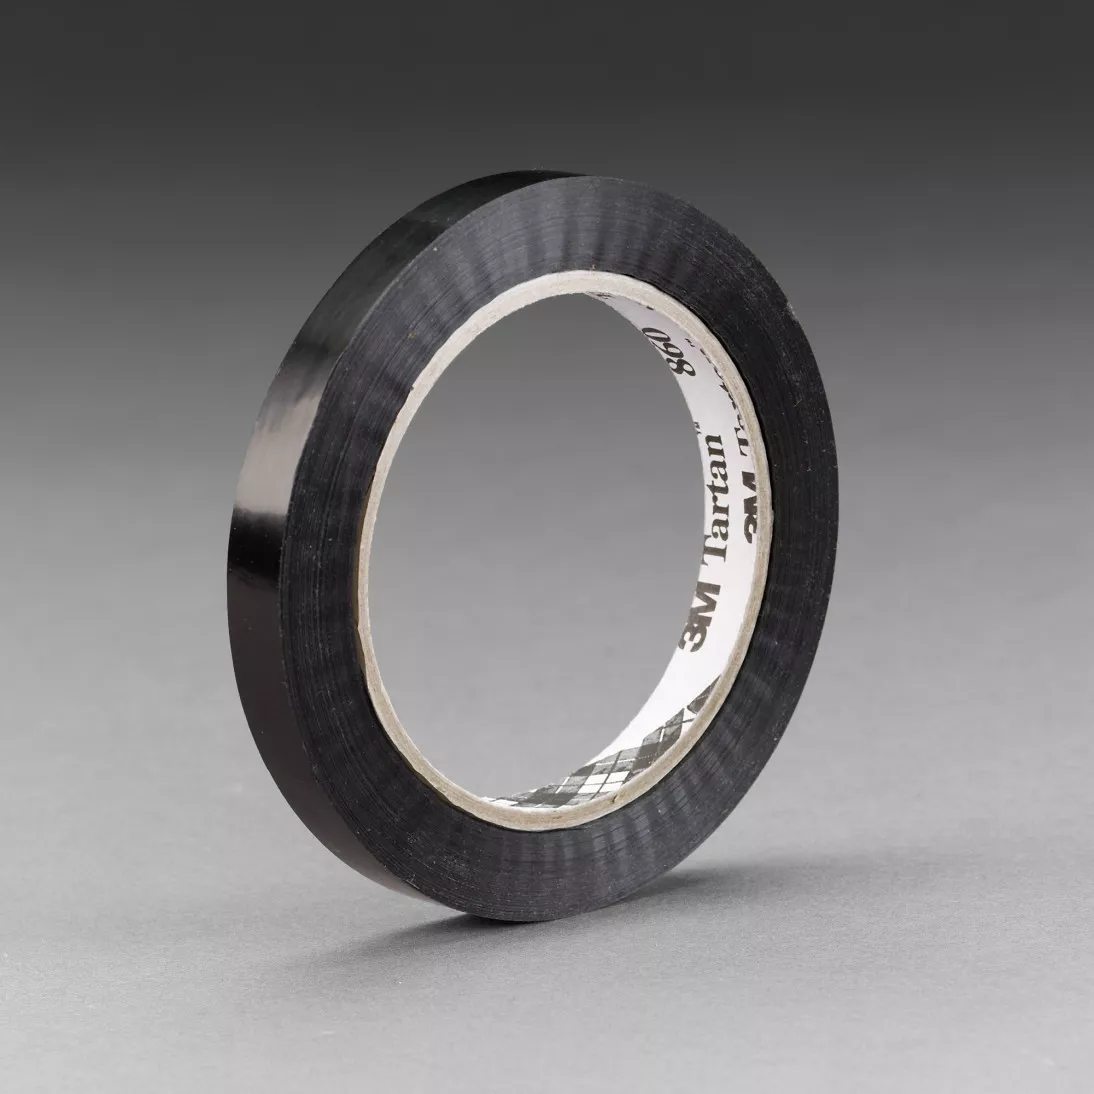 Tartan™ Strapping Tape 860, Black, 12 mm x 110 m, 2.8 mil, 144 rolls per
case